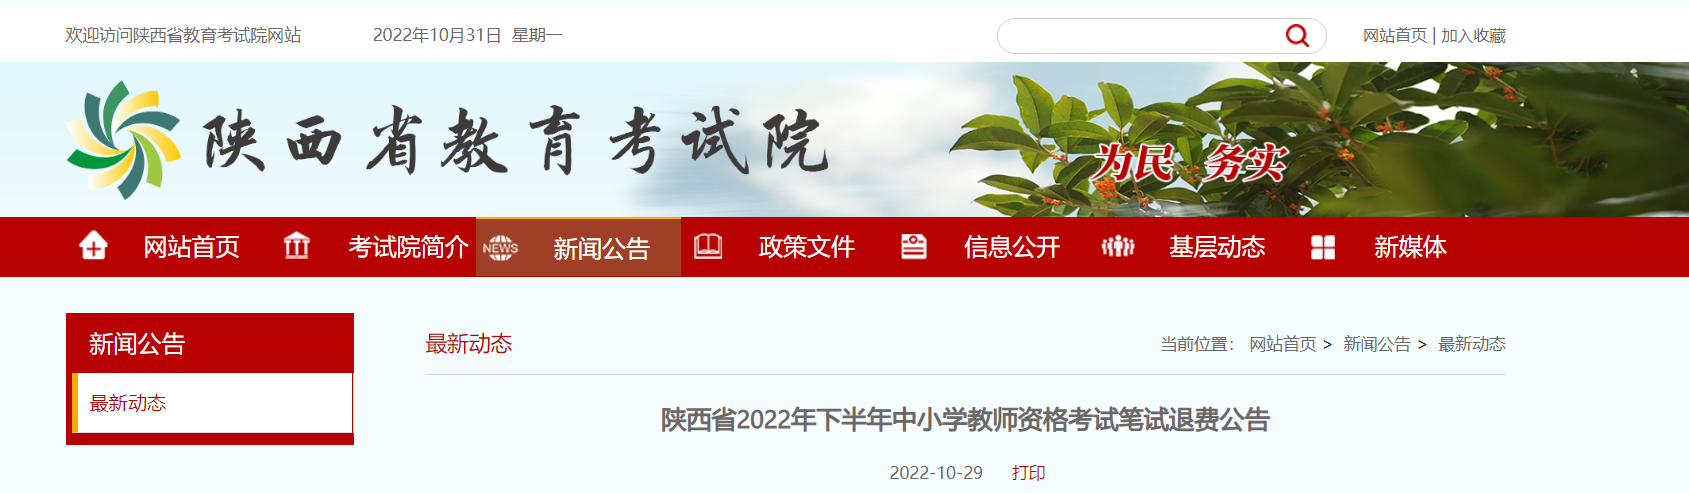 2022年下半年陕西中小学教师资格考试笔试退费公告